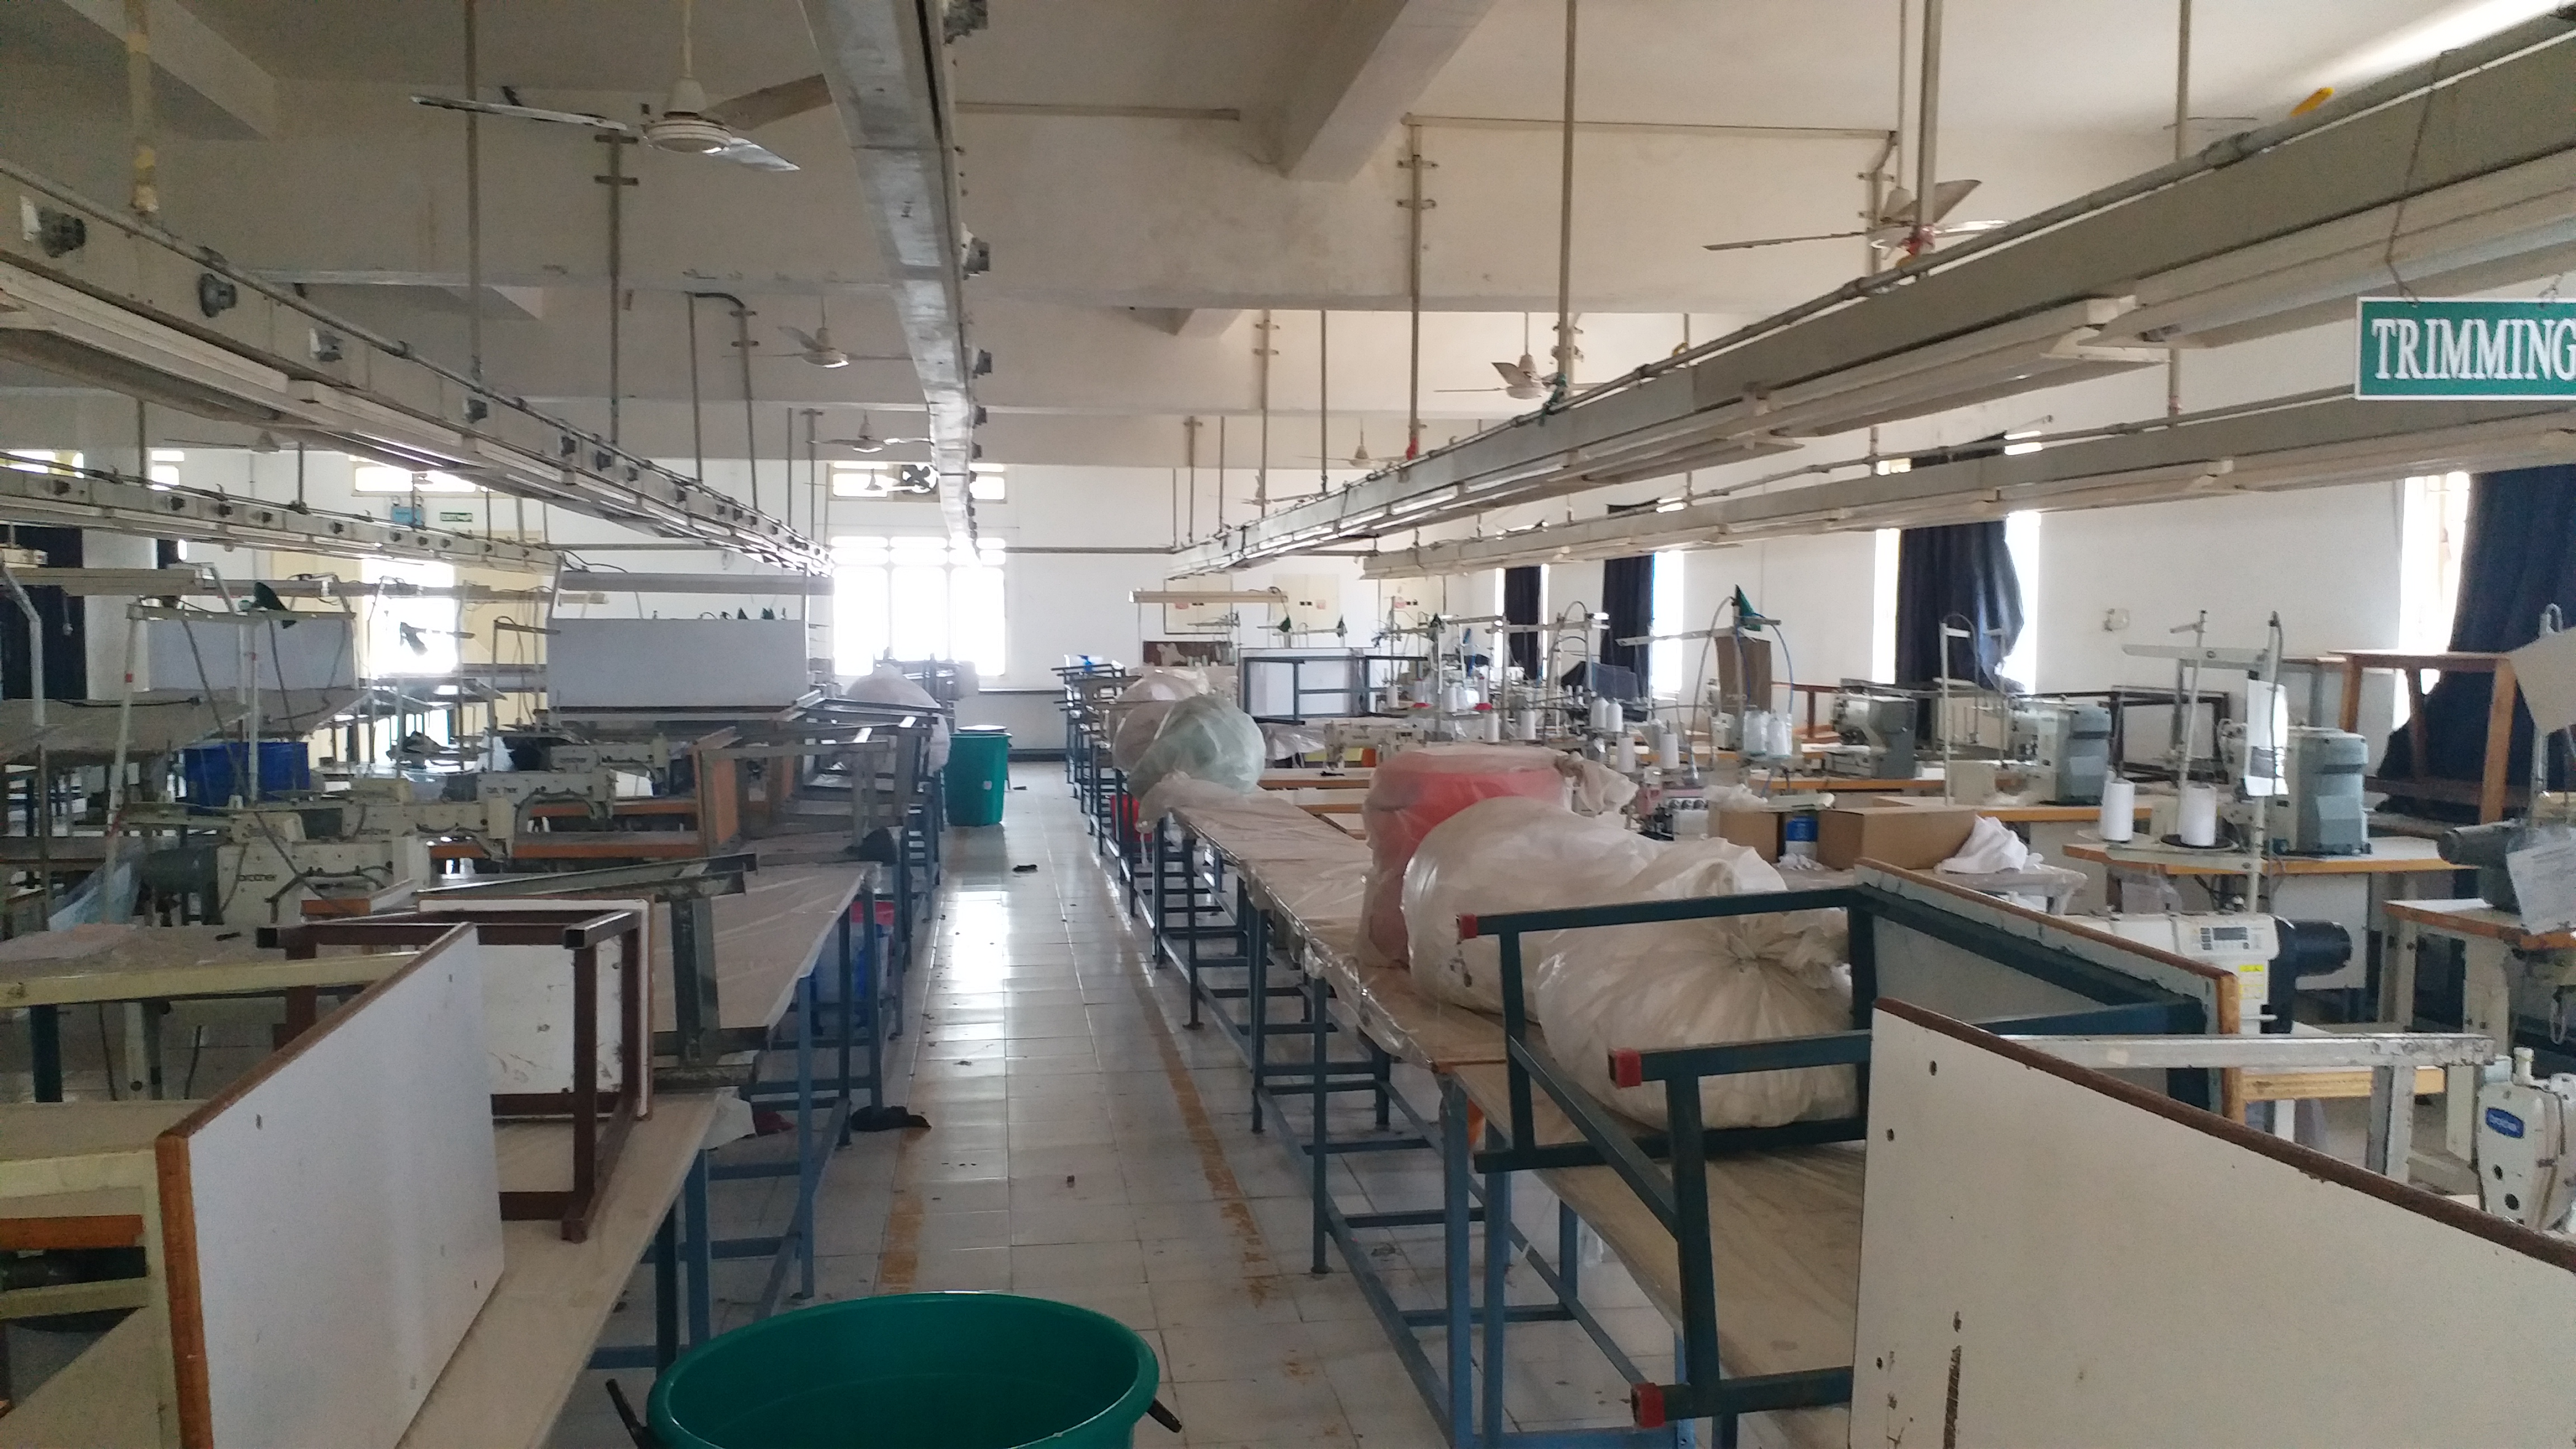 A knitwear factory in Tiruppur